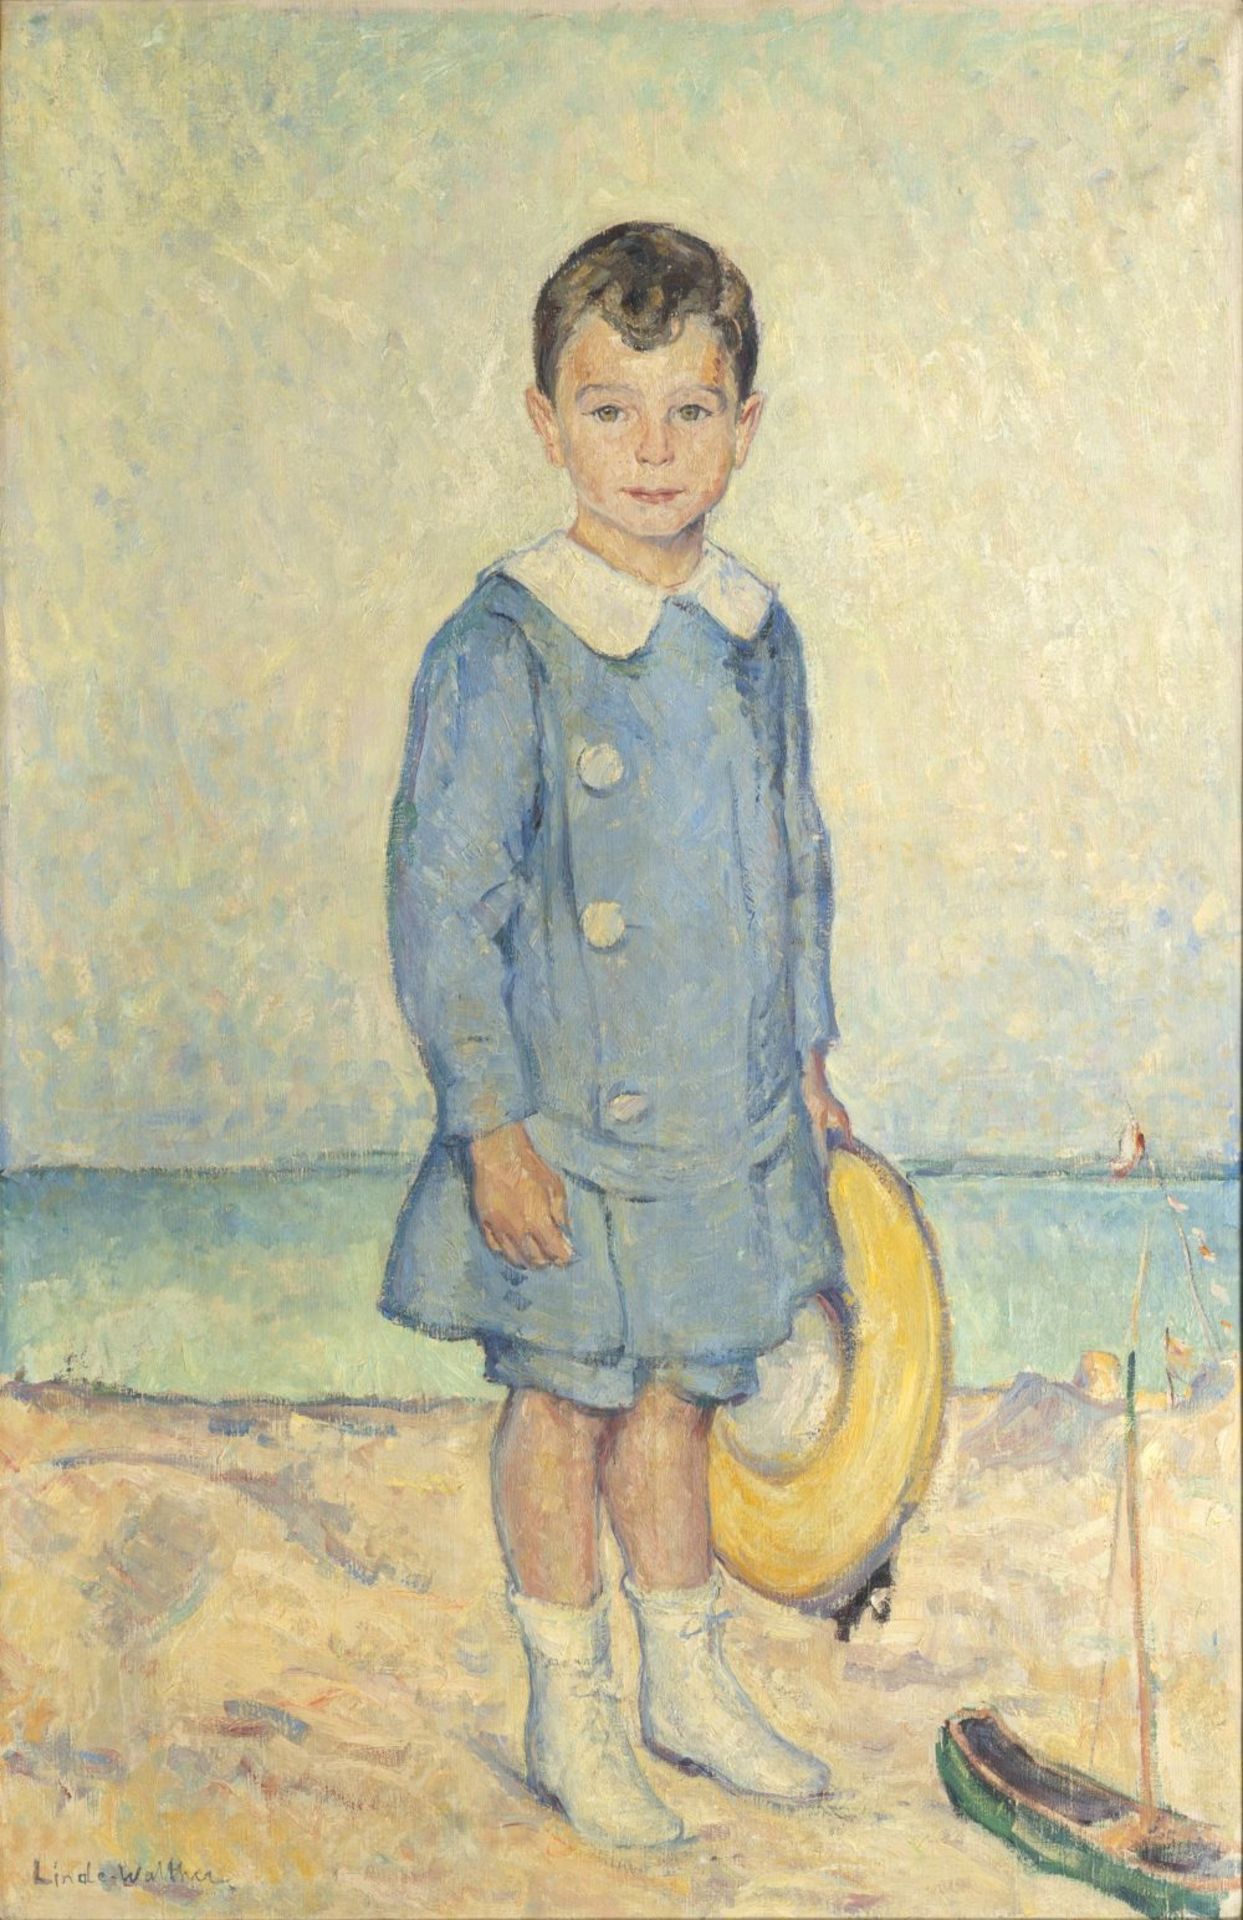 Linde-Walther, Heinrich (Lübeck 1868 - Lübeck 1939). Karl Warburg as a Boy.